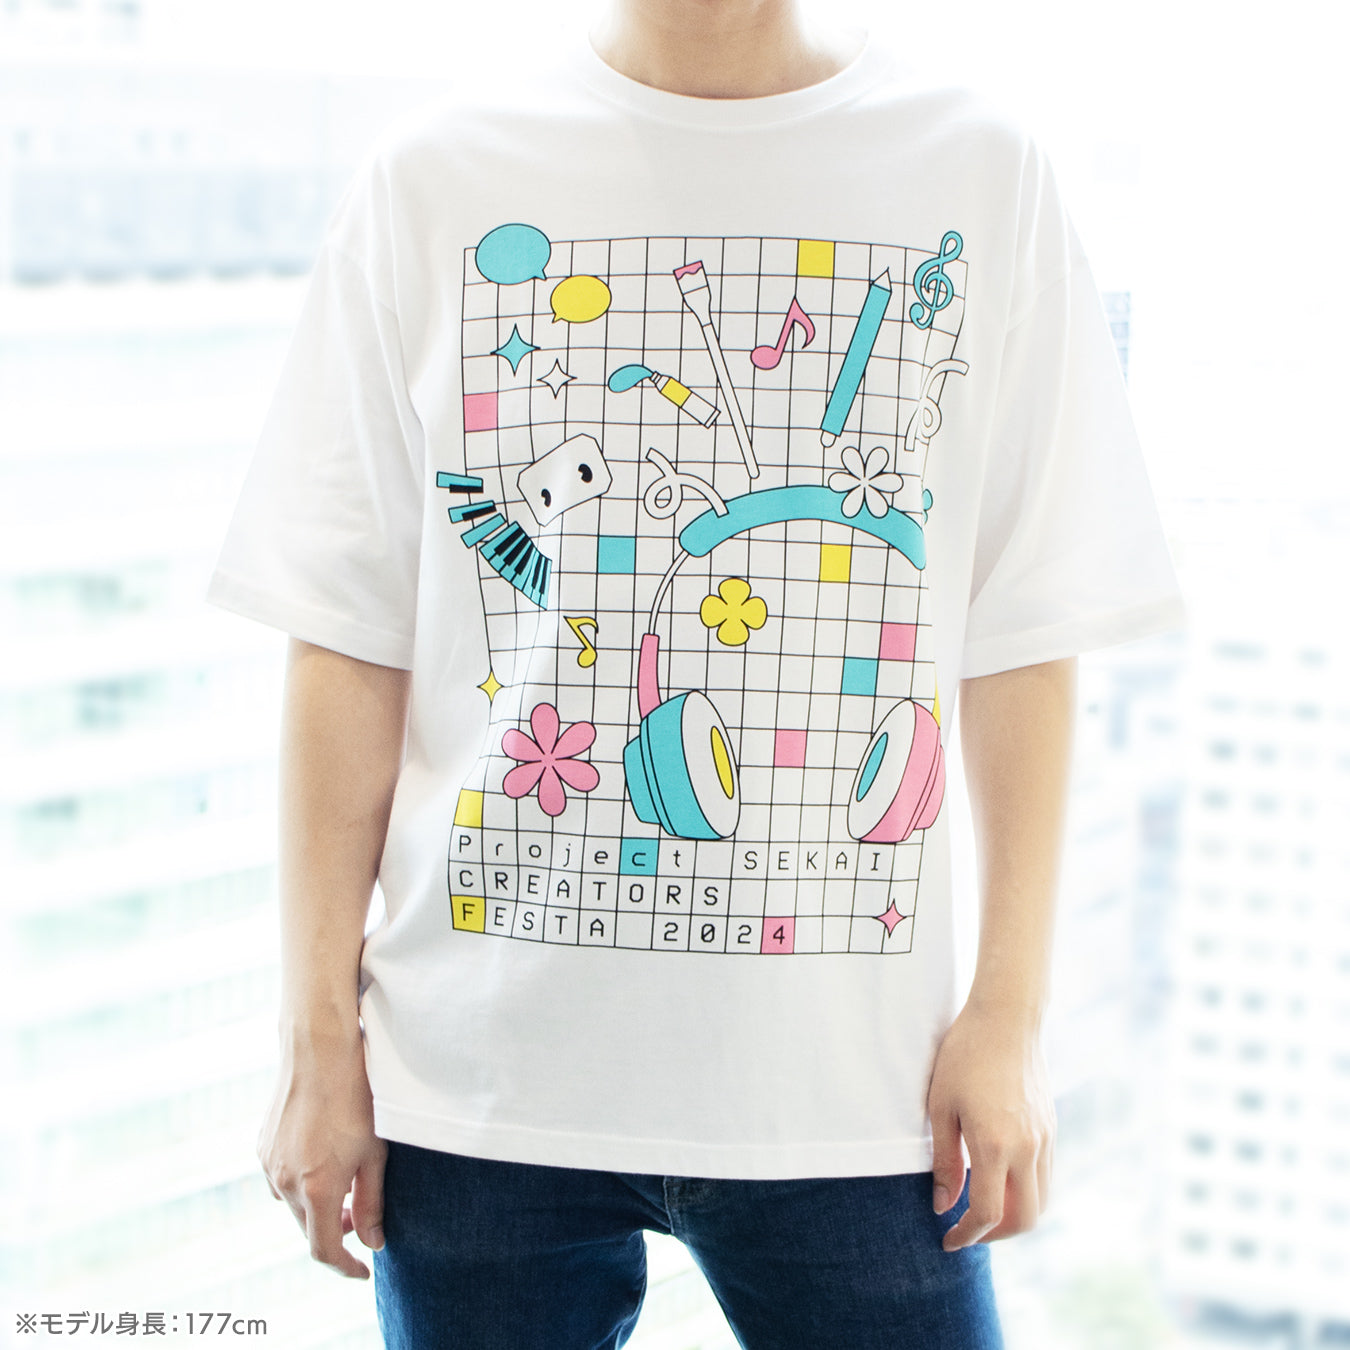 【予約商品】プロジェクトセカイ クリエイターズフェスタ2024 in ニコニコ超会議 Tシャツ